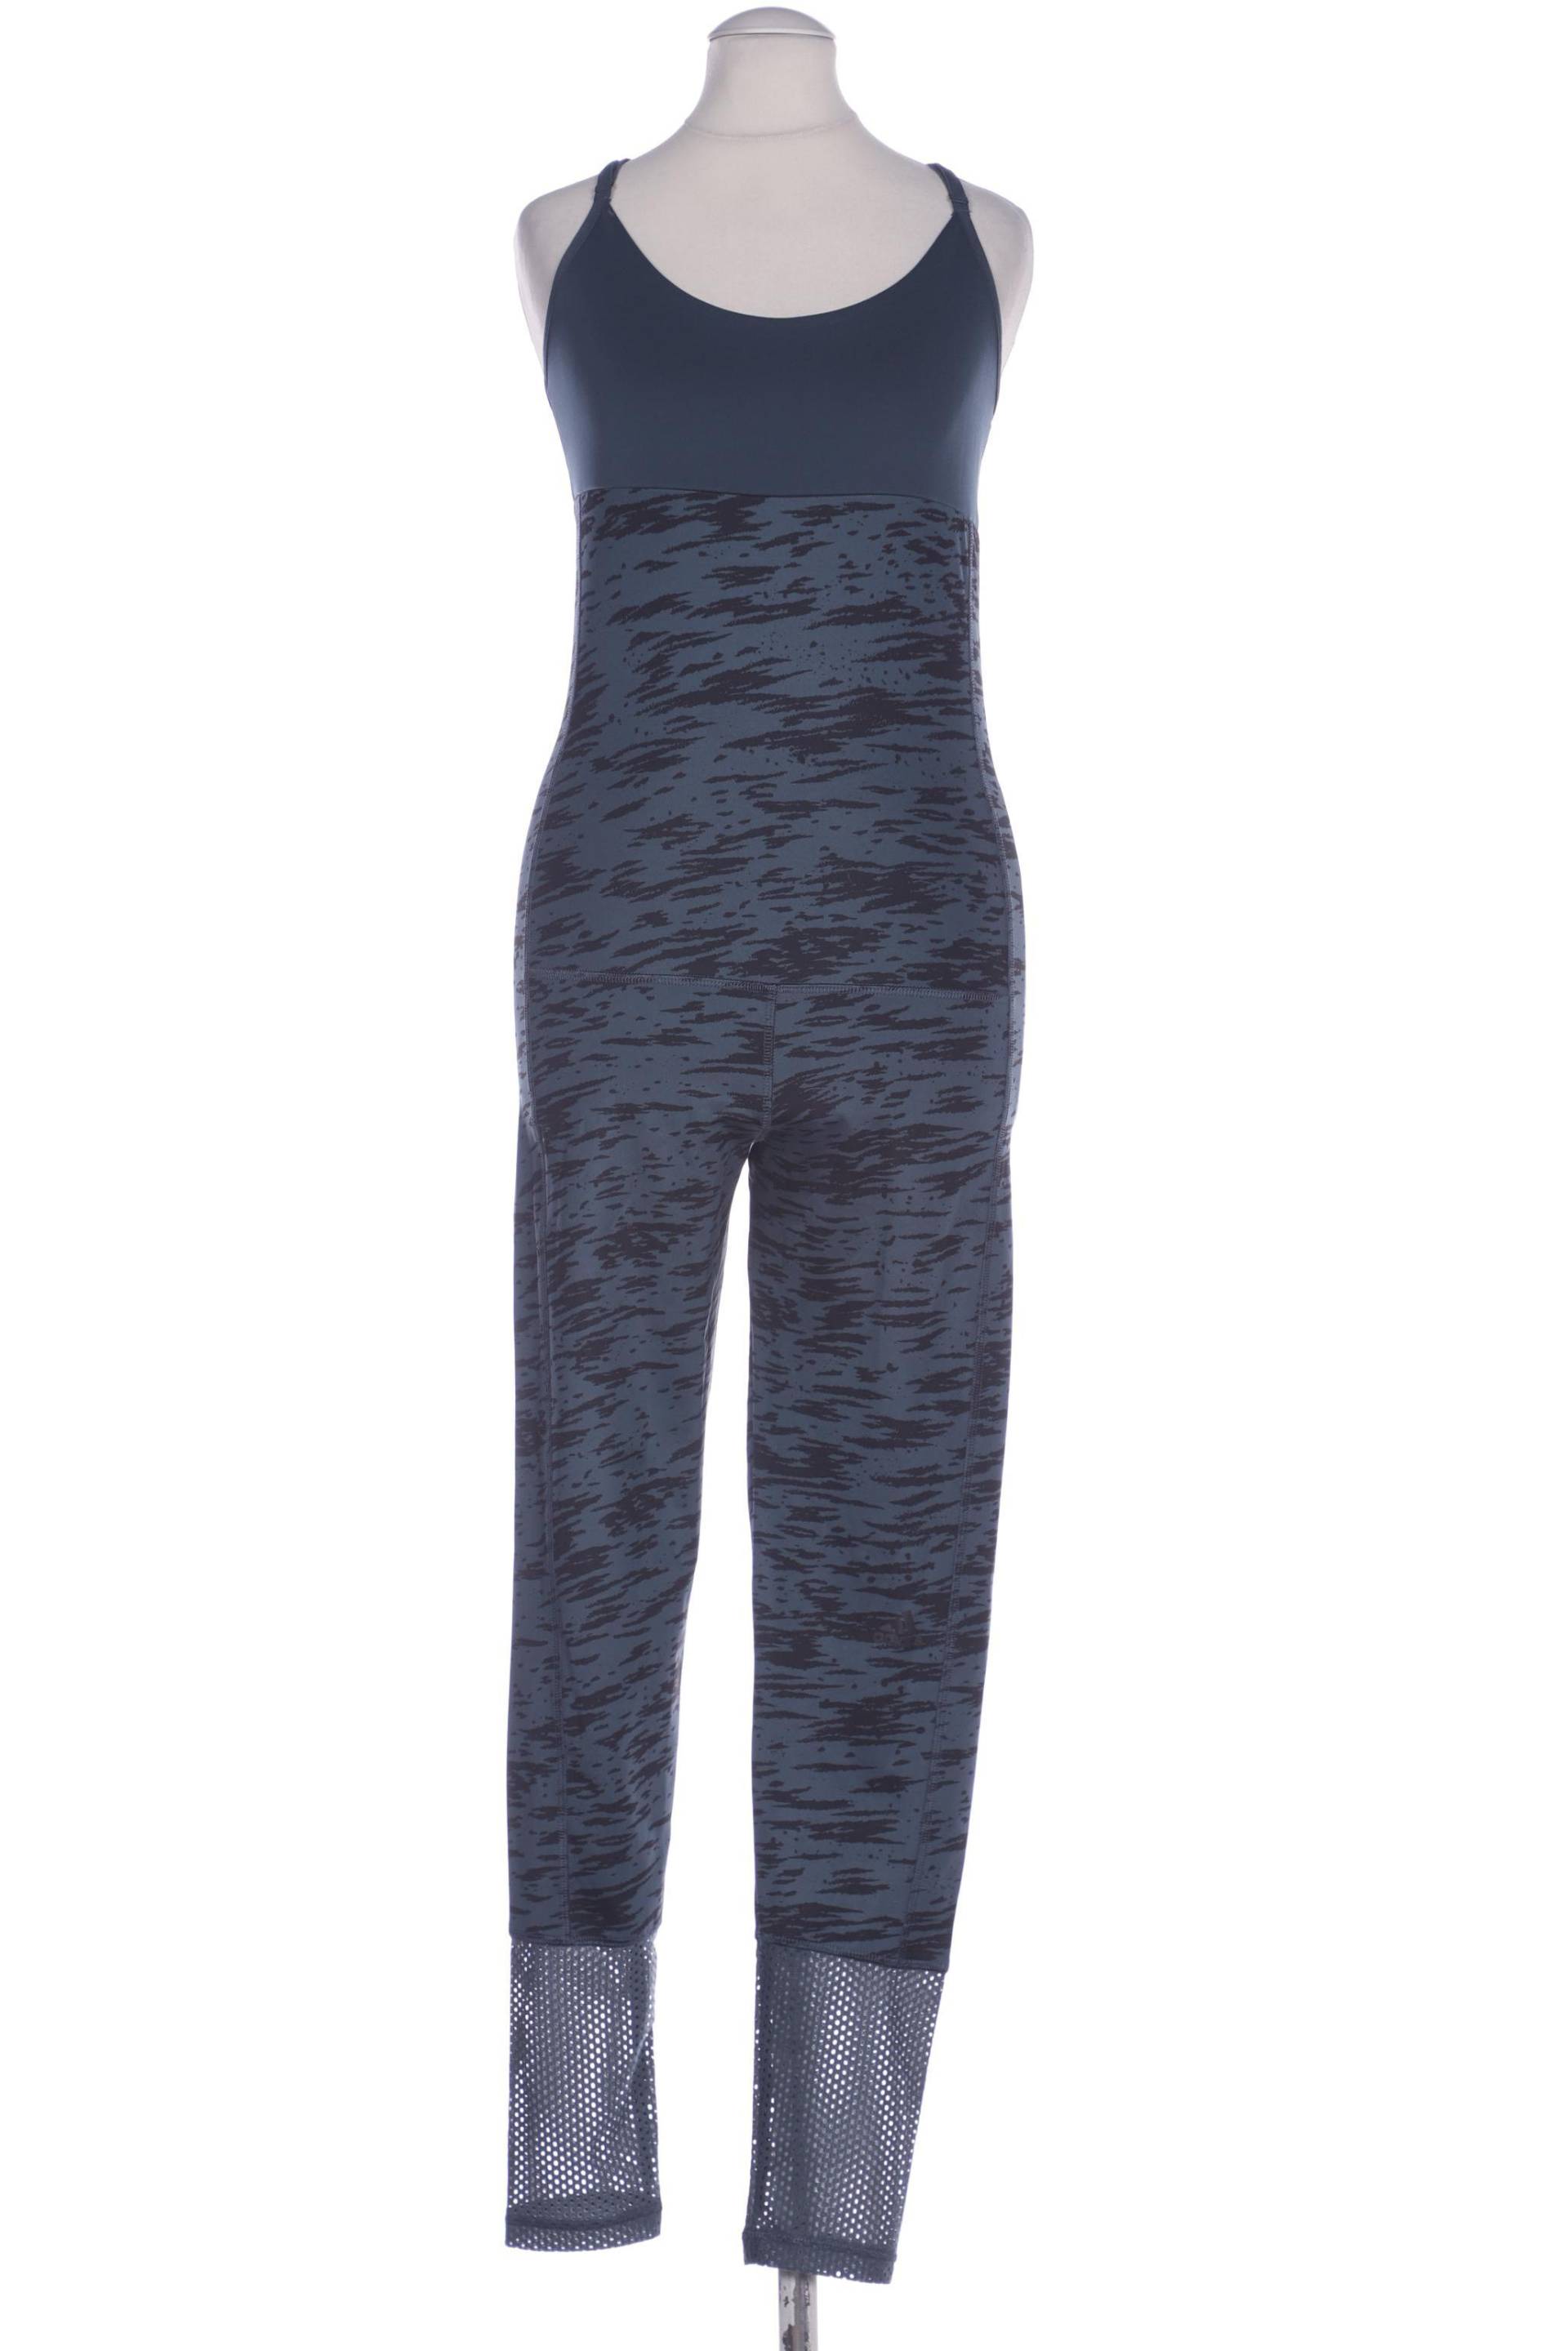 adidas Damen Jumpsuit/Overall, marineblau, Gr. 36 von Adidas